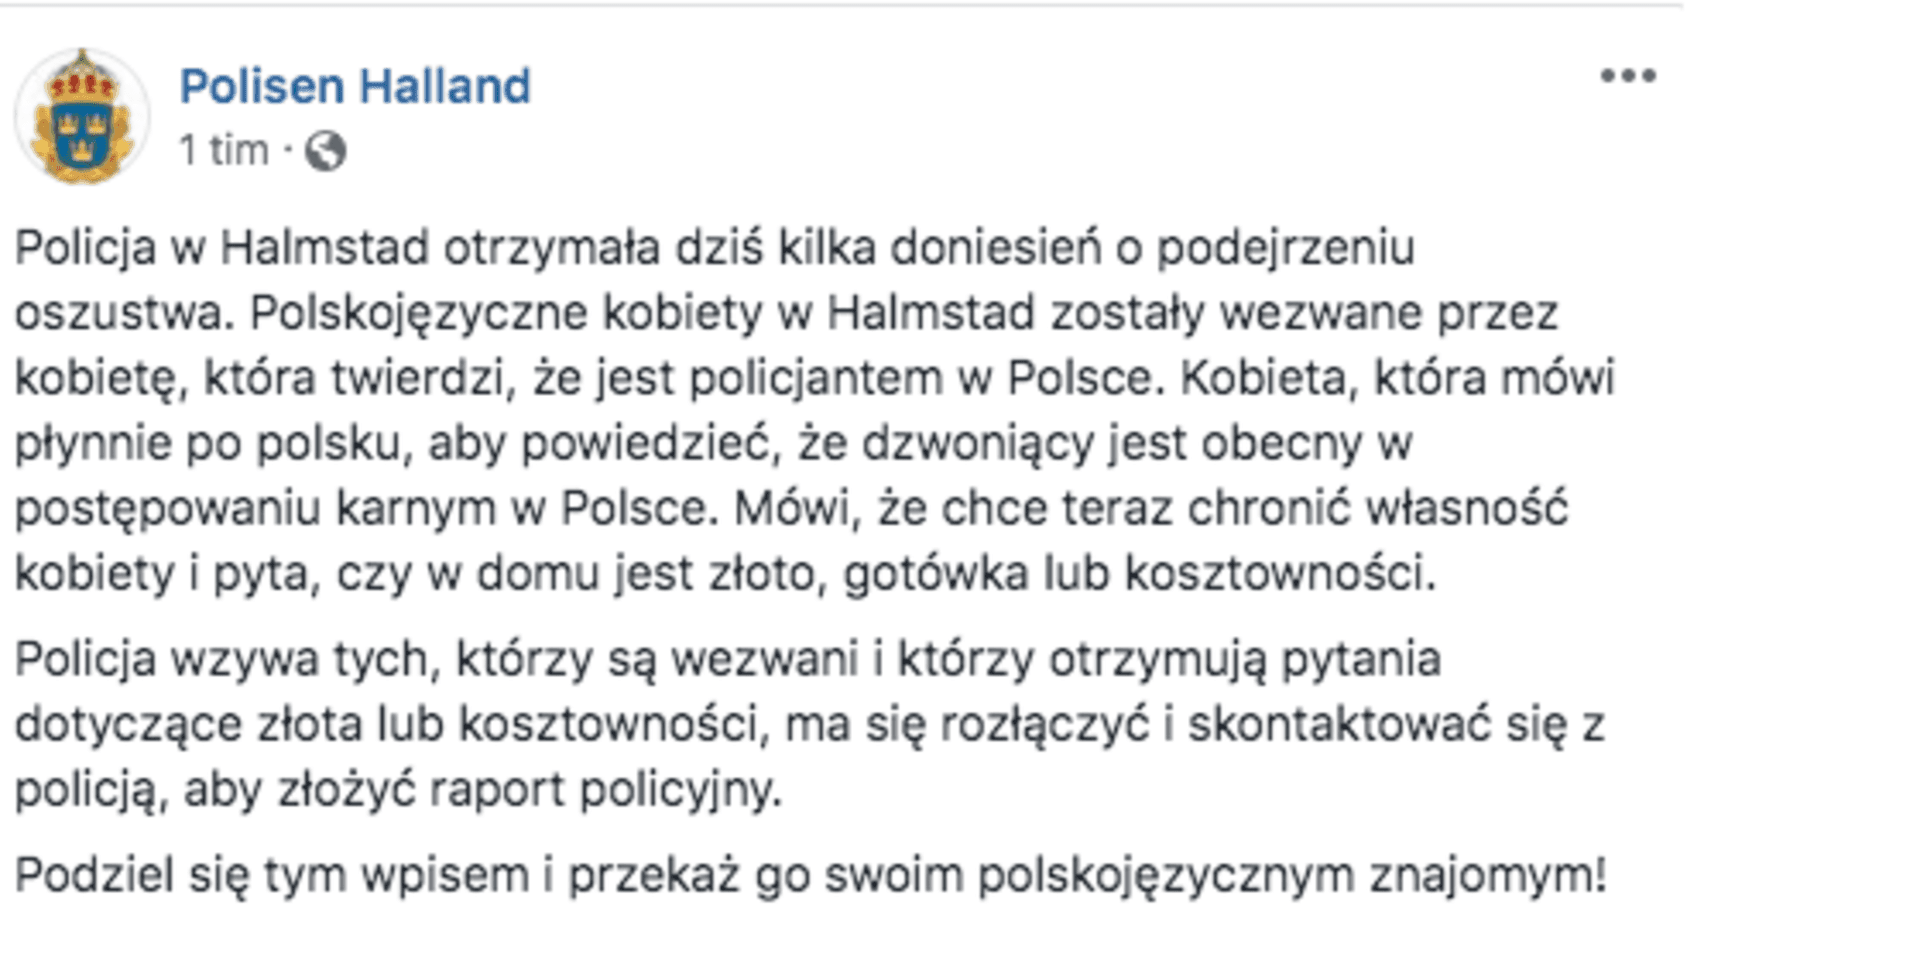 I sociala medier varnar polisen för polsktalande bedragare. 